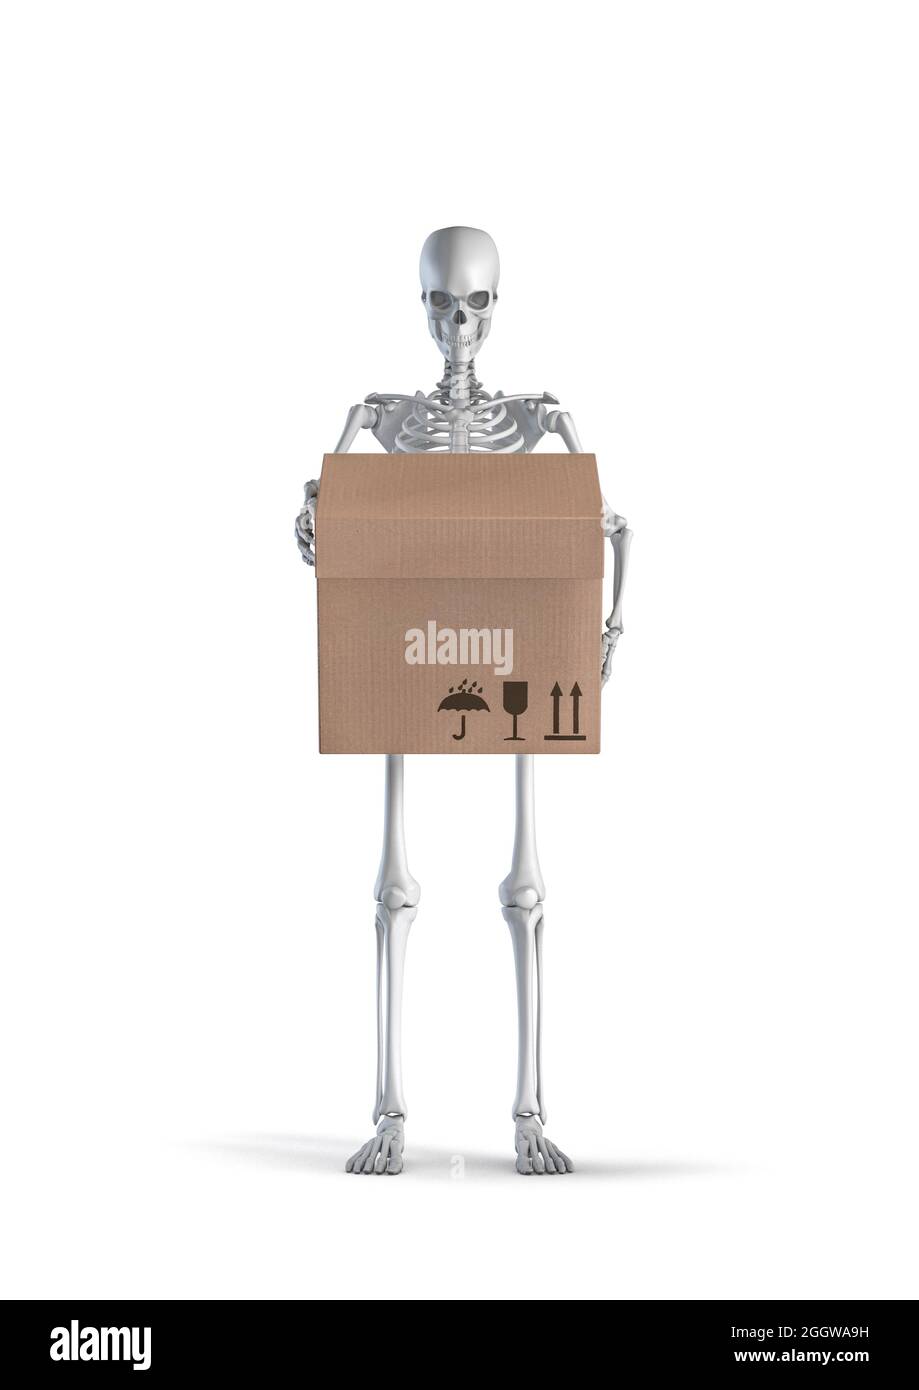 Squelette avec livraison en boîte - illustration 3D du squelette humain mâle tenant une boîte en carton isolée sur fond blanc de studio Banque D'Images